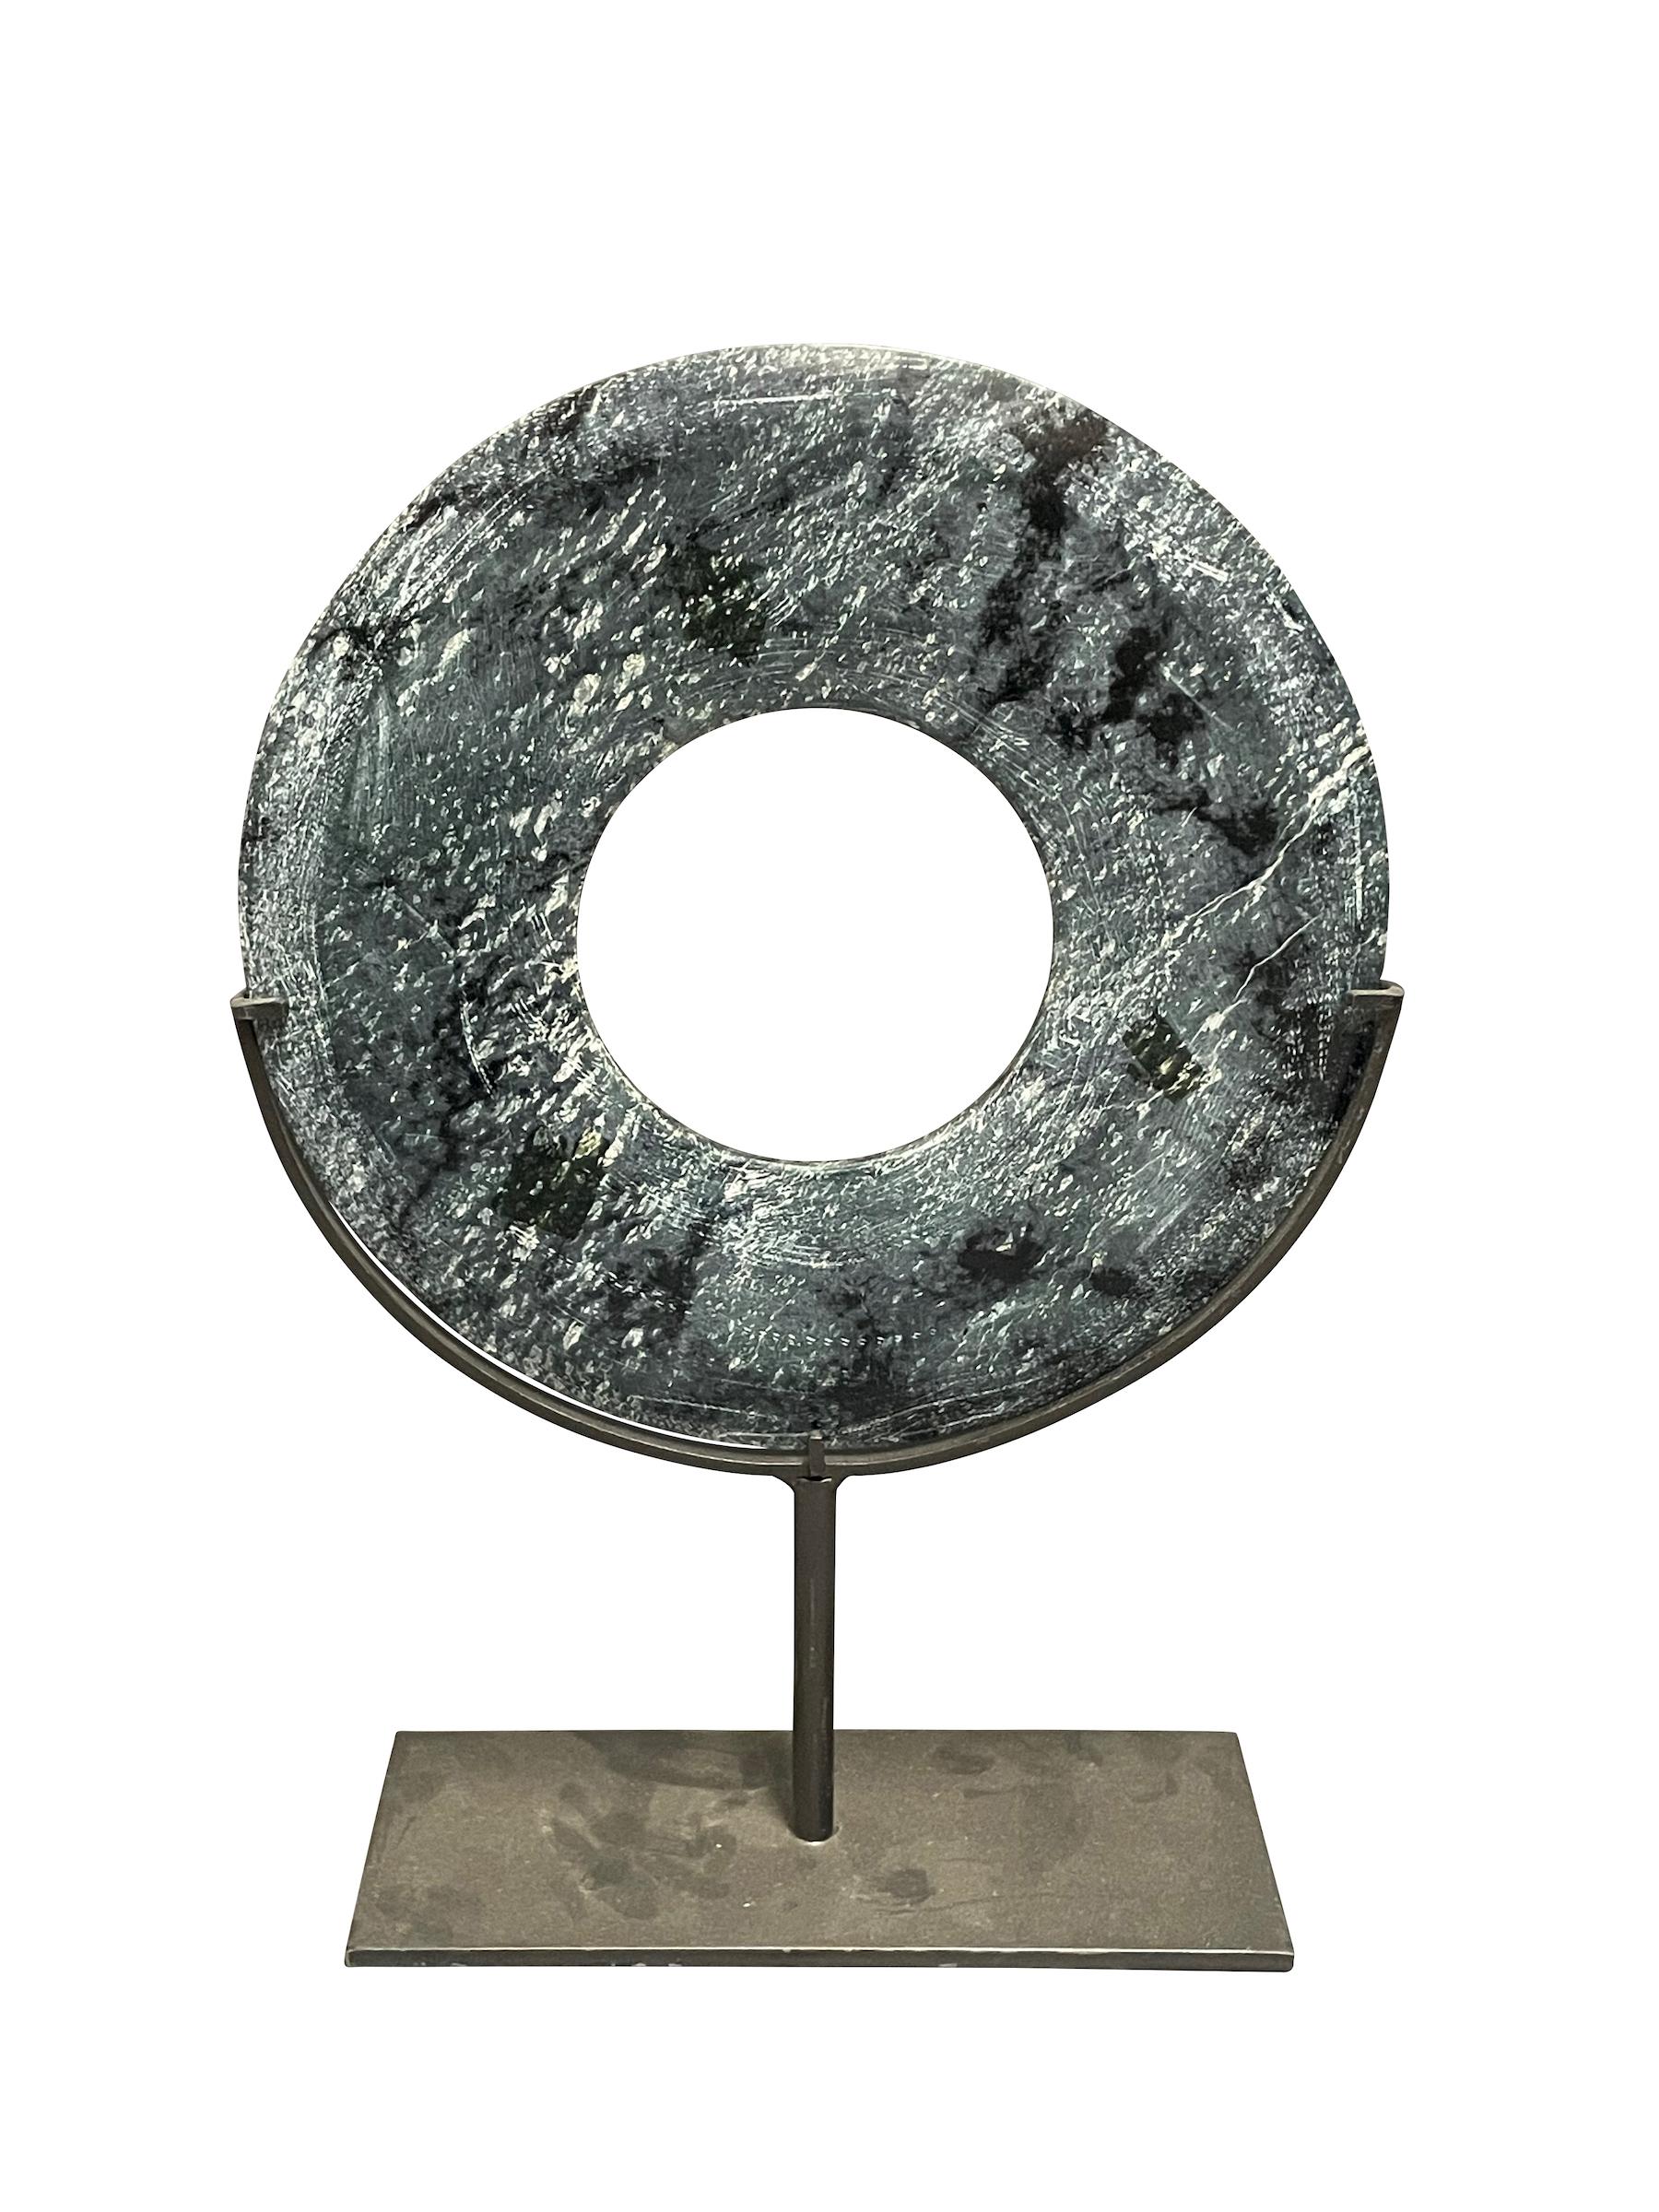 Ensemble chinois contemporain de deux disques en pierre de jade bleu/gris et noir sur des supports en métal.
Un disque mesure 10d  x  14h       mesures du stand   9  x  3.5
Un disque mesure  8d  x   11h        mesures du stand   5  x  2
La façade en